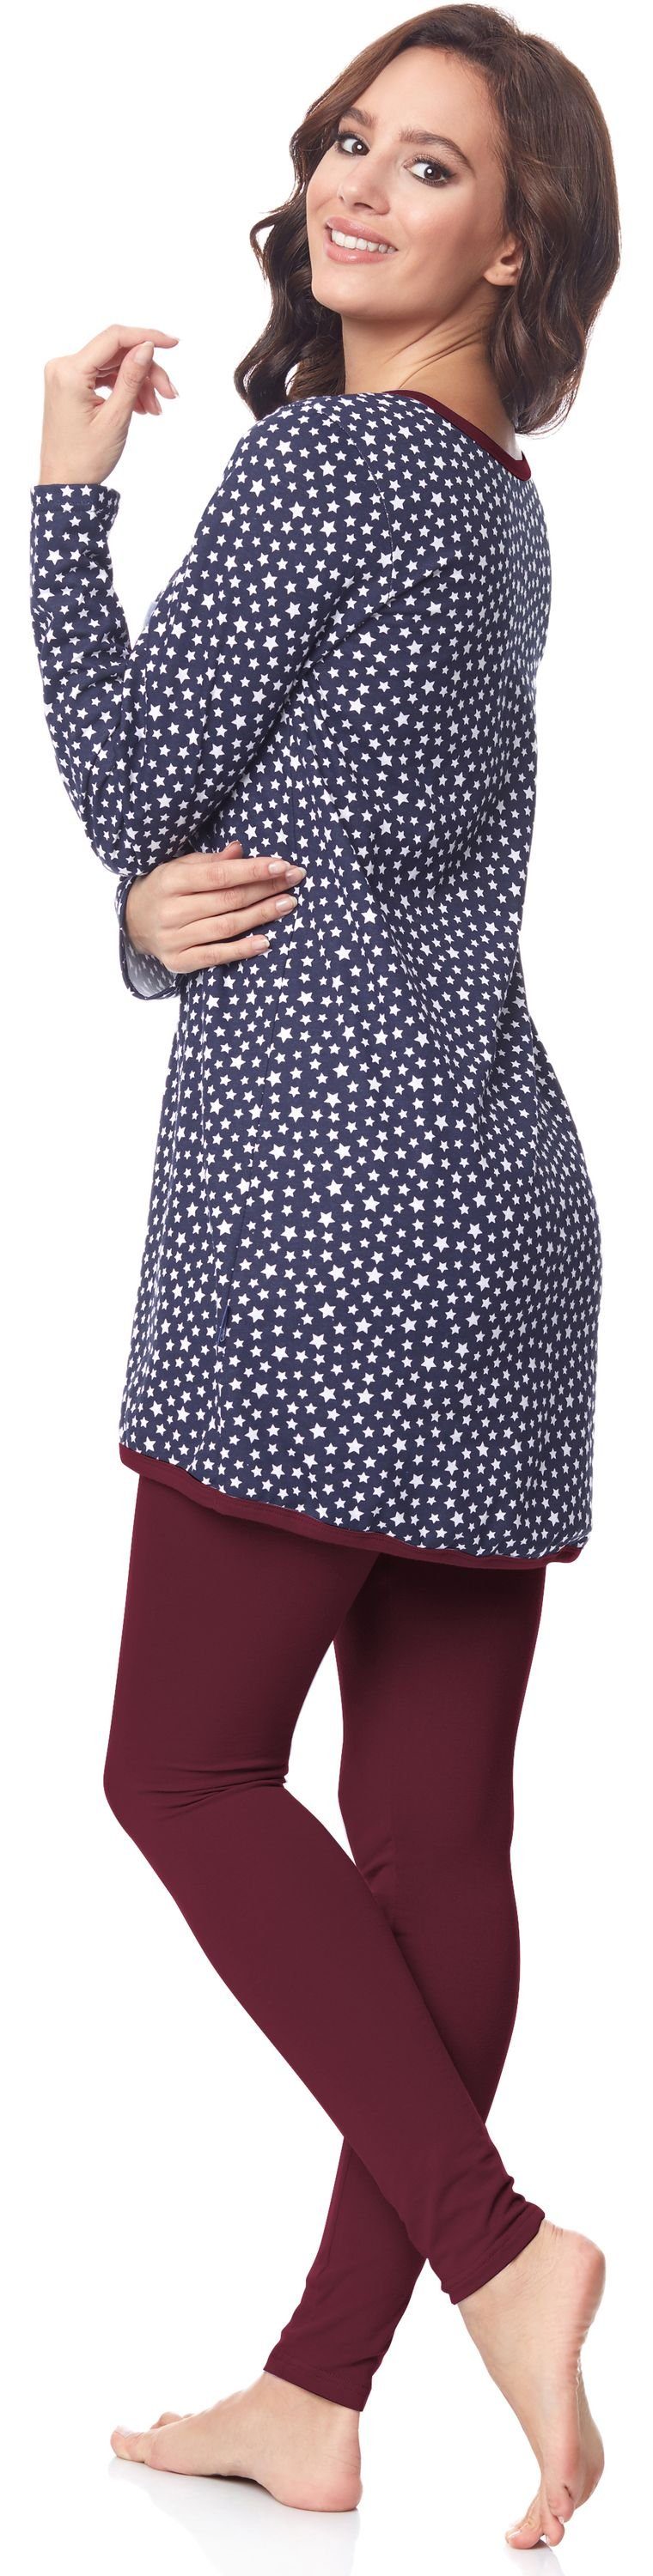 Damen Mammy BE20-178 mit Stillfunktion Pyjama Langarm Marineblau-Sterne-Weinrot Be Umstandspyjama